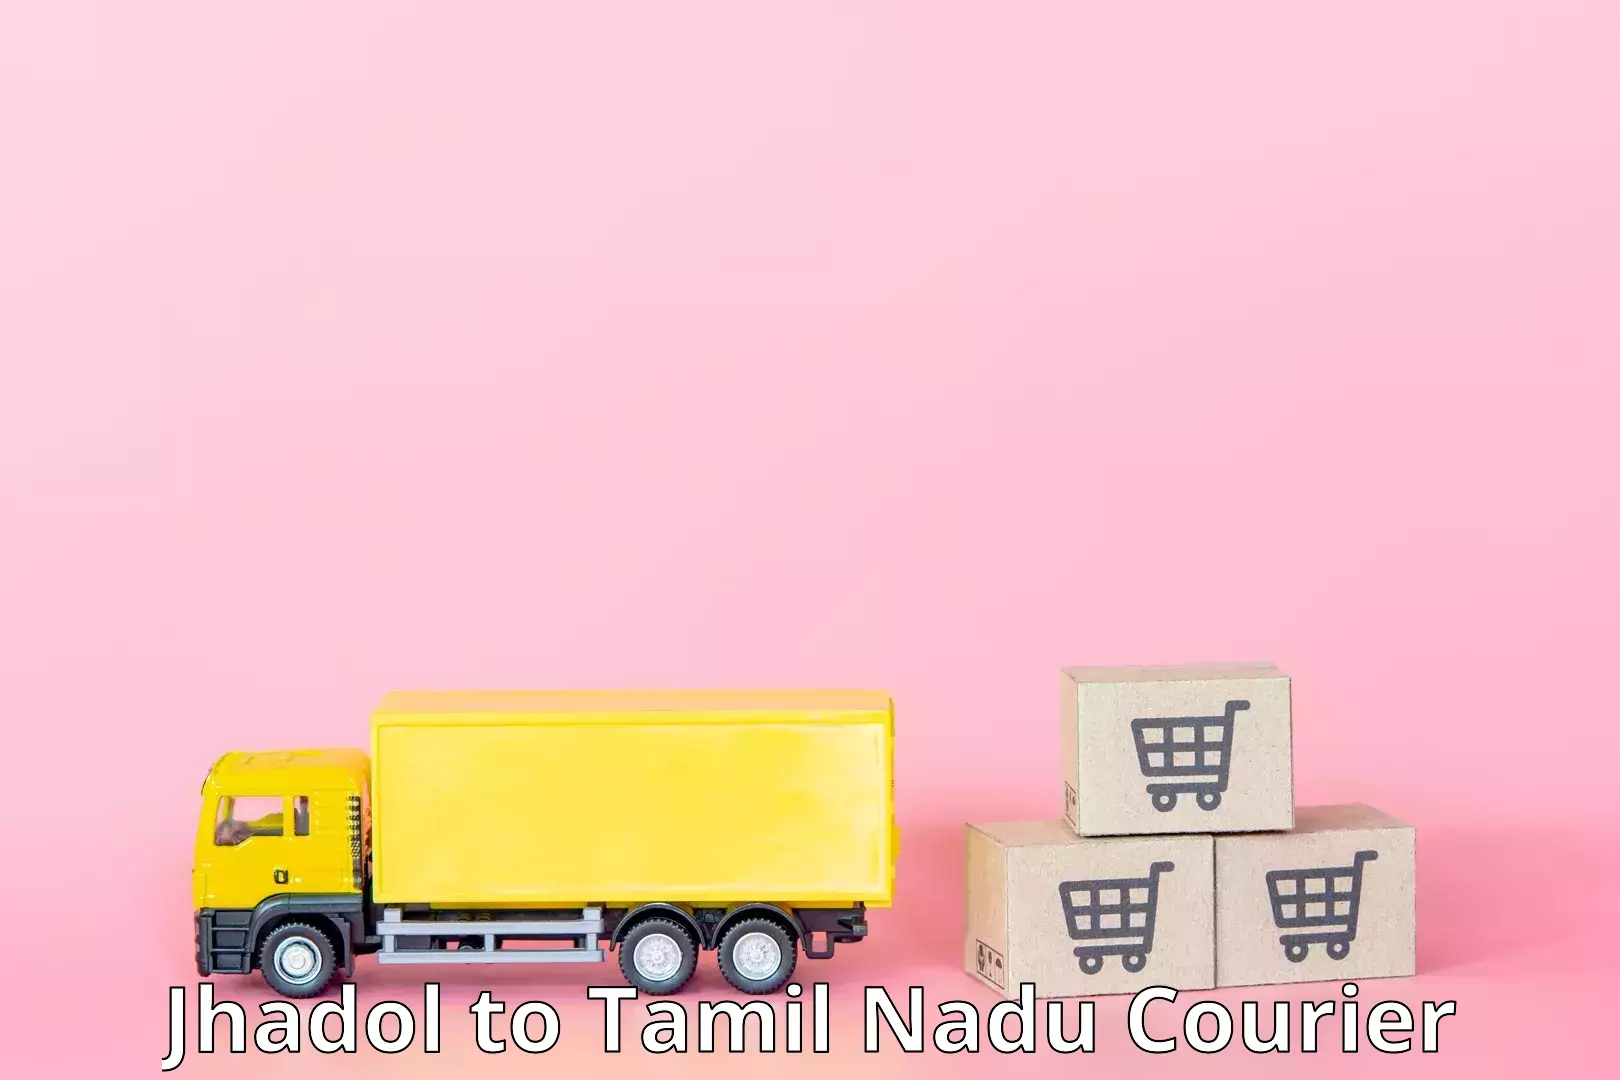 Secure package delivery in Jhadol to Tamil Nadu